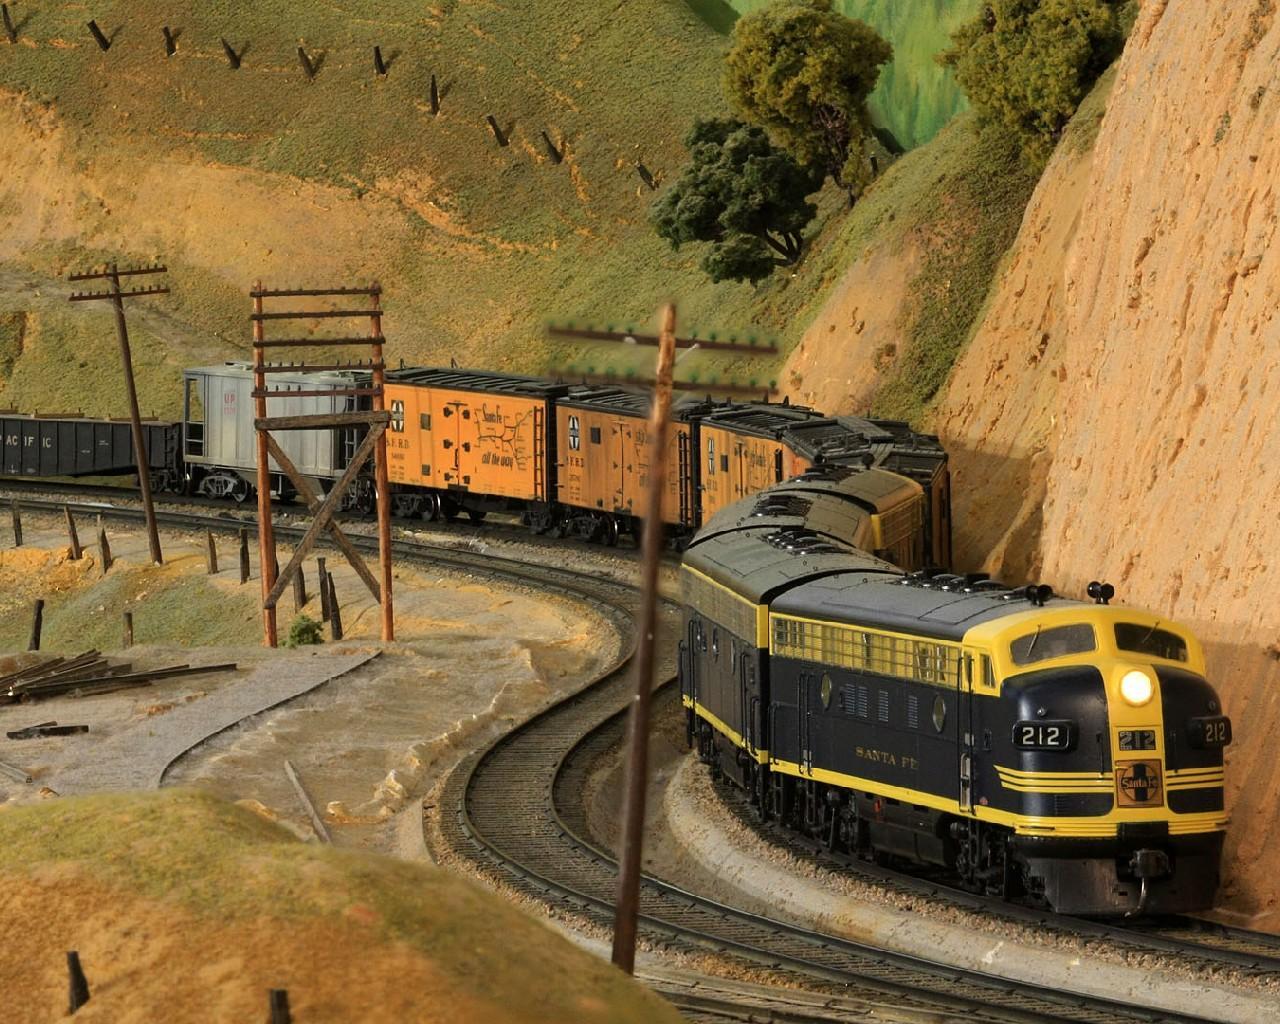 Железная дорога модель Траин. Трансокеанская железная дорога. Tech Train 90127 модель железной дороги. Железная дорога обои.